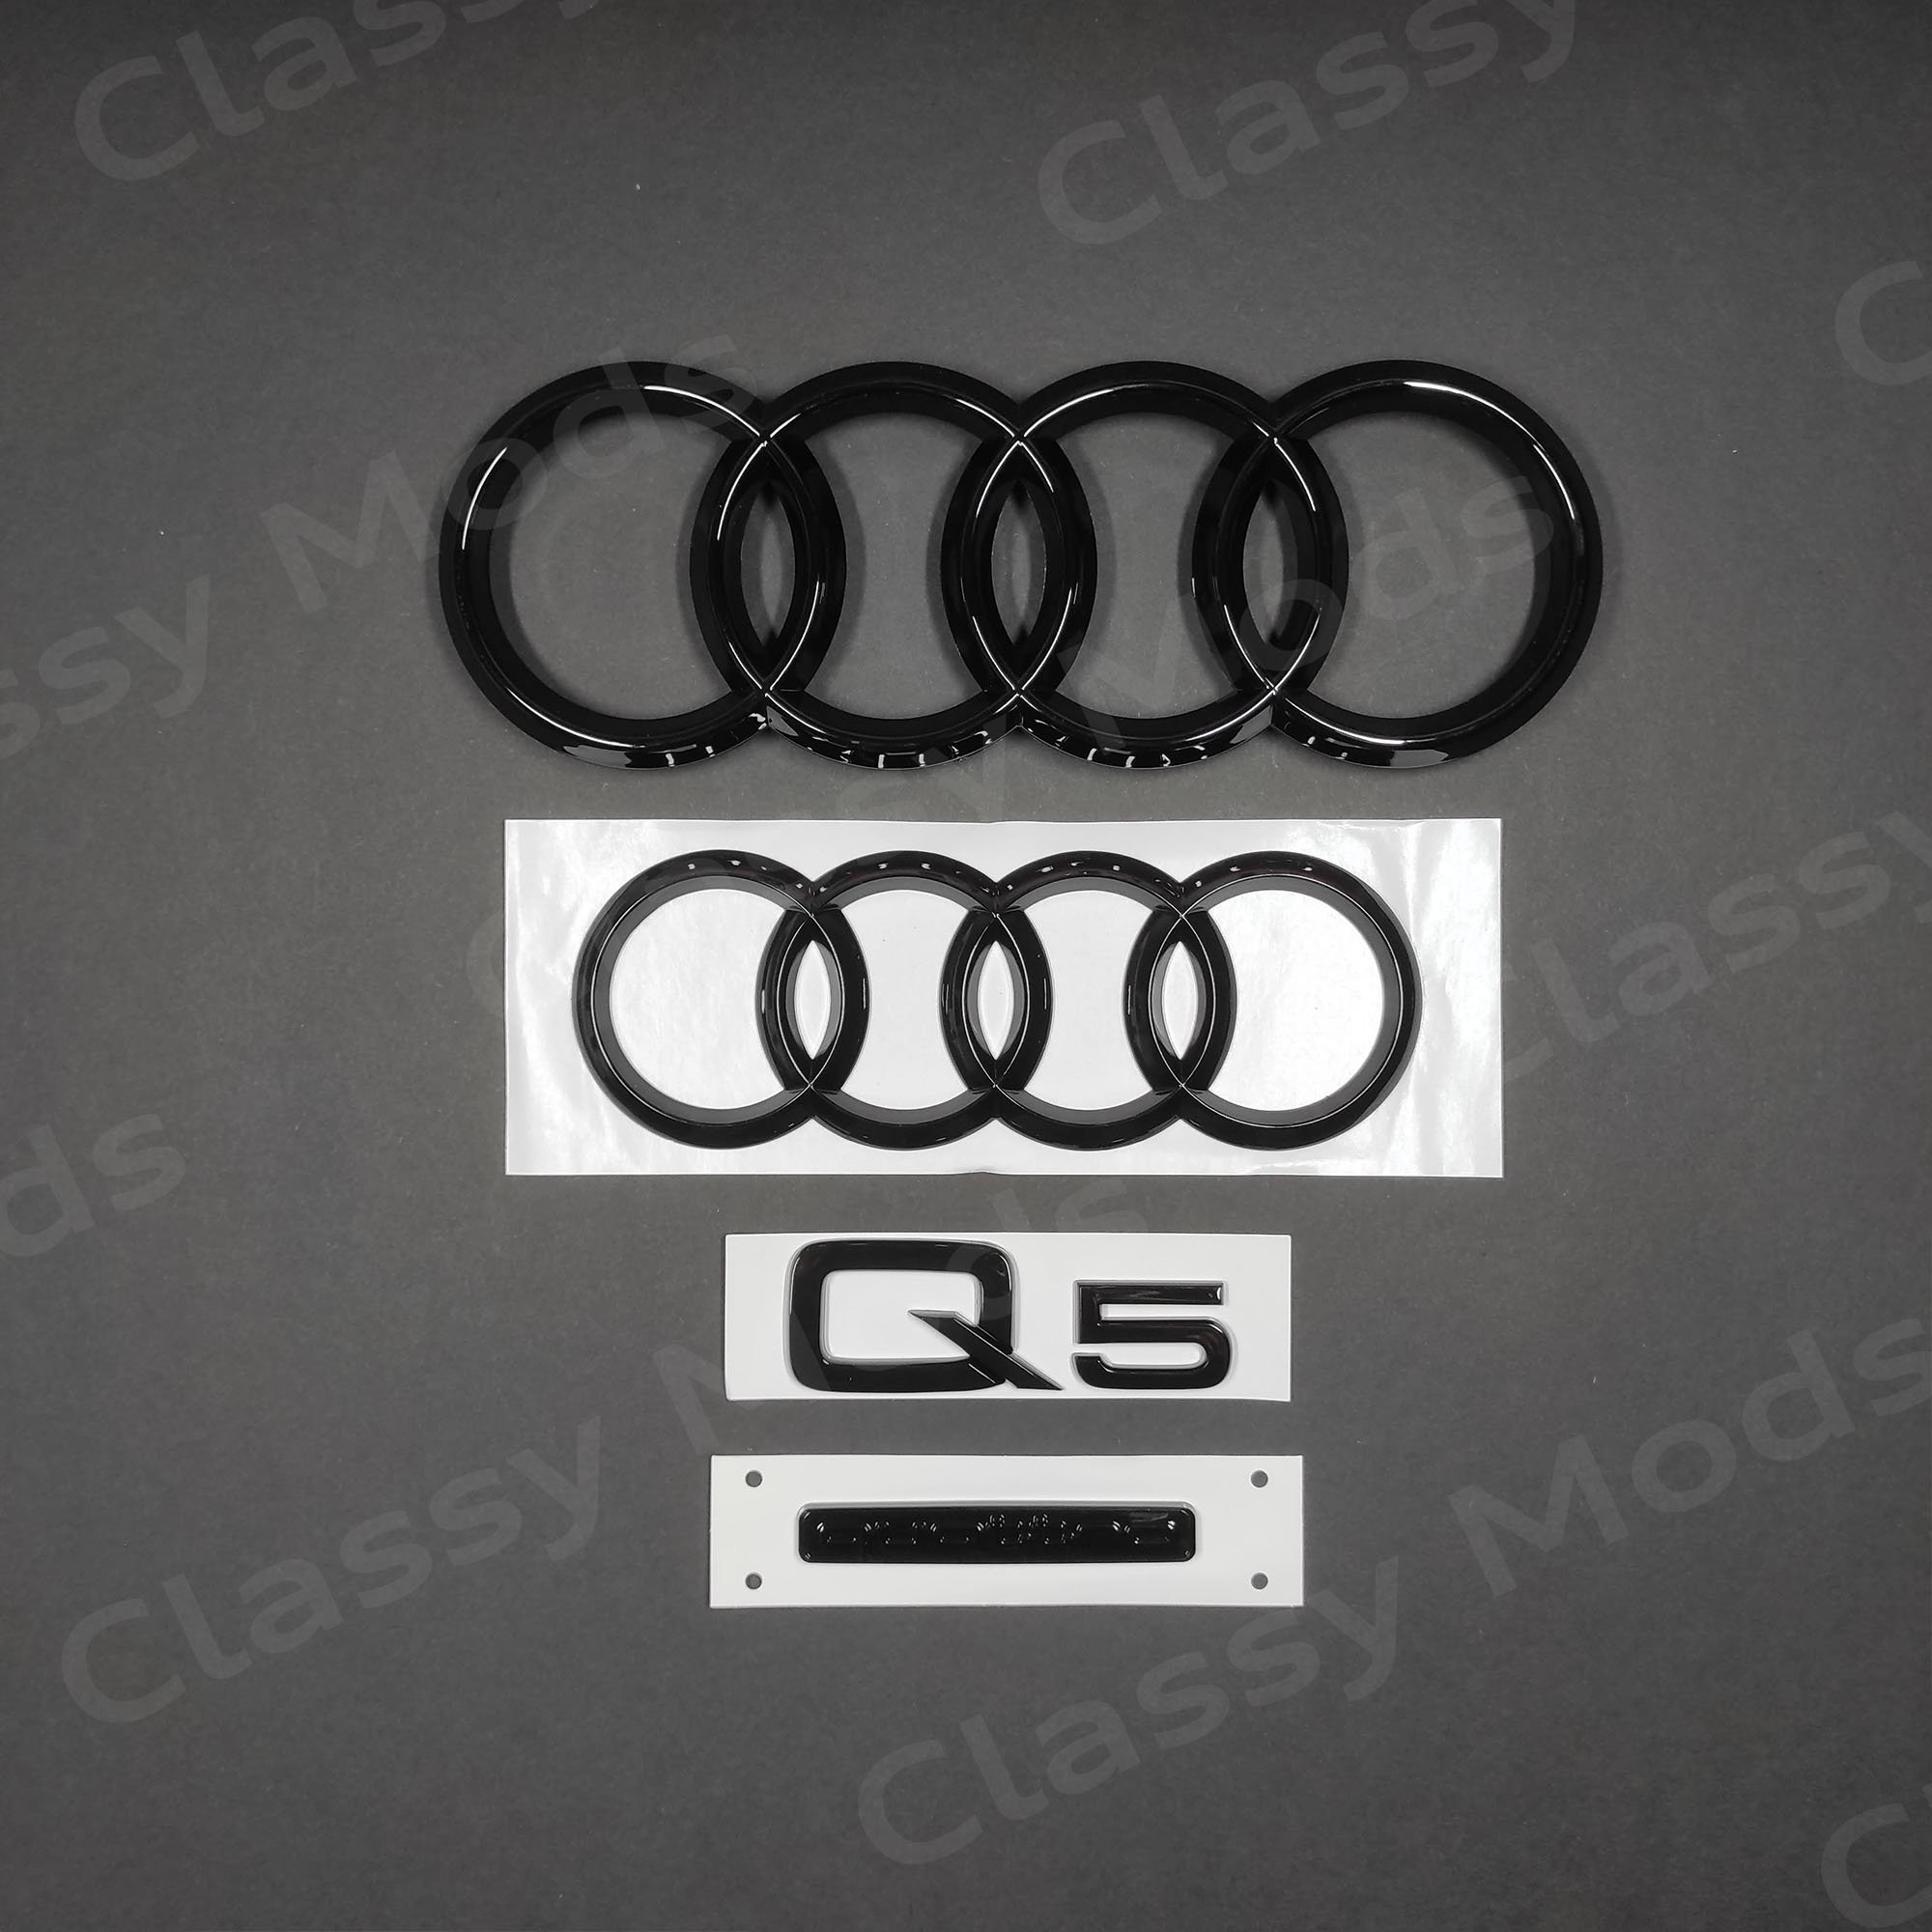 Audi Emblem / Ringe schwarz glänzend für Gepäckraumklappe Audi Q5 / SQ5 FY, AUDI Q5 / SQ5 FY ab 2017, Audi Q5 / SQ5, Audi Embleme schwarz, Audi